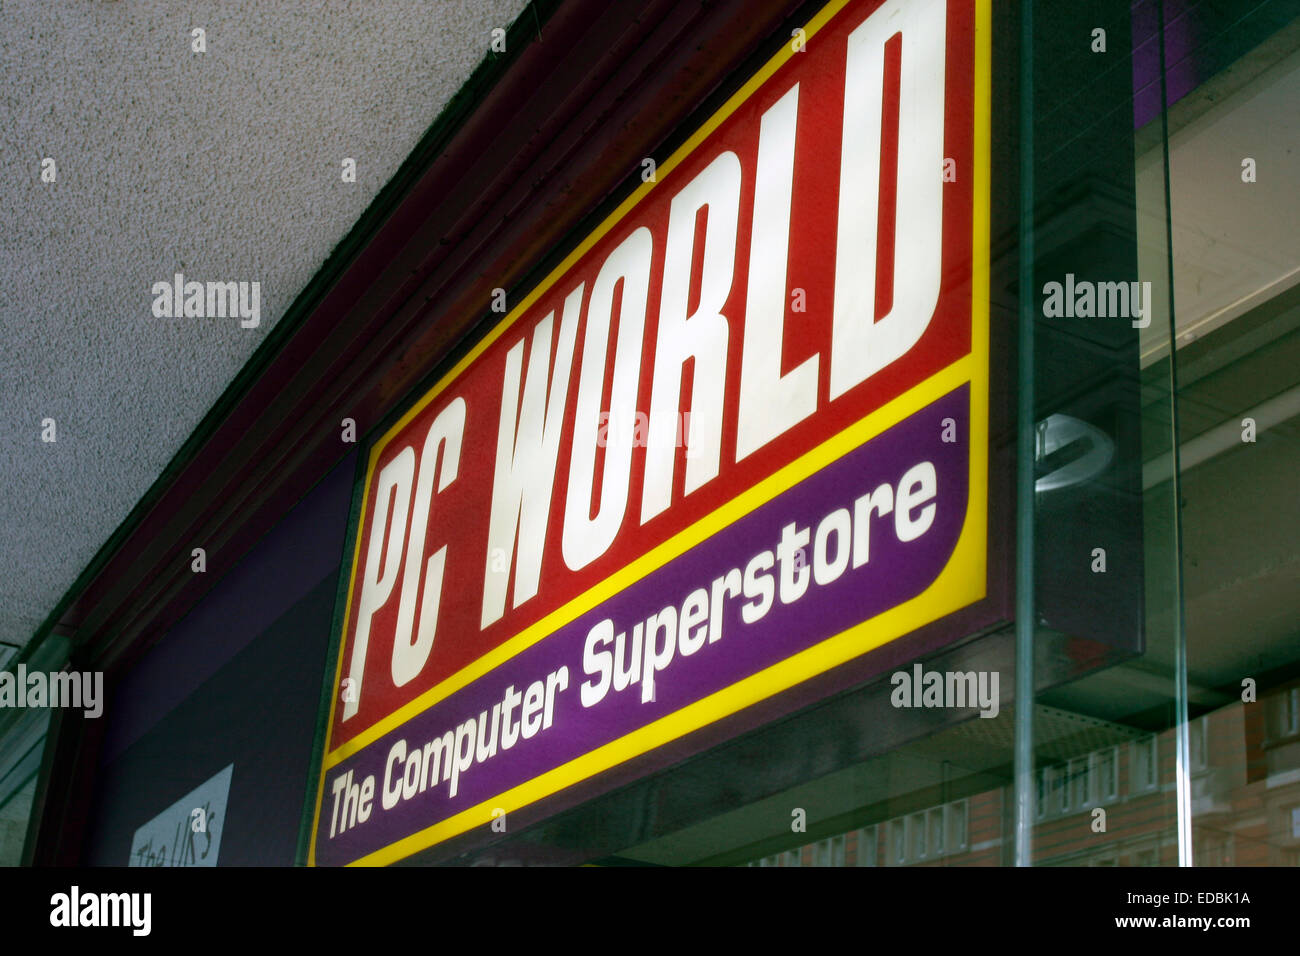 PC World store branding. Stock Photo